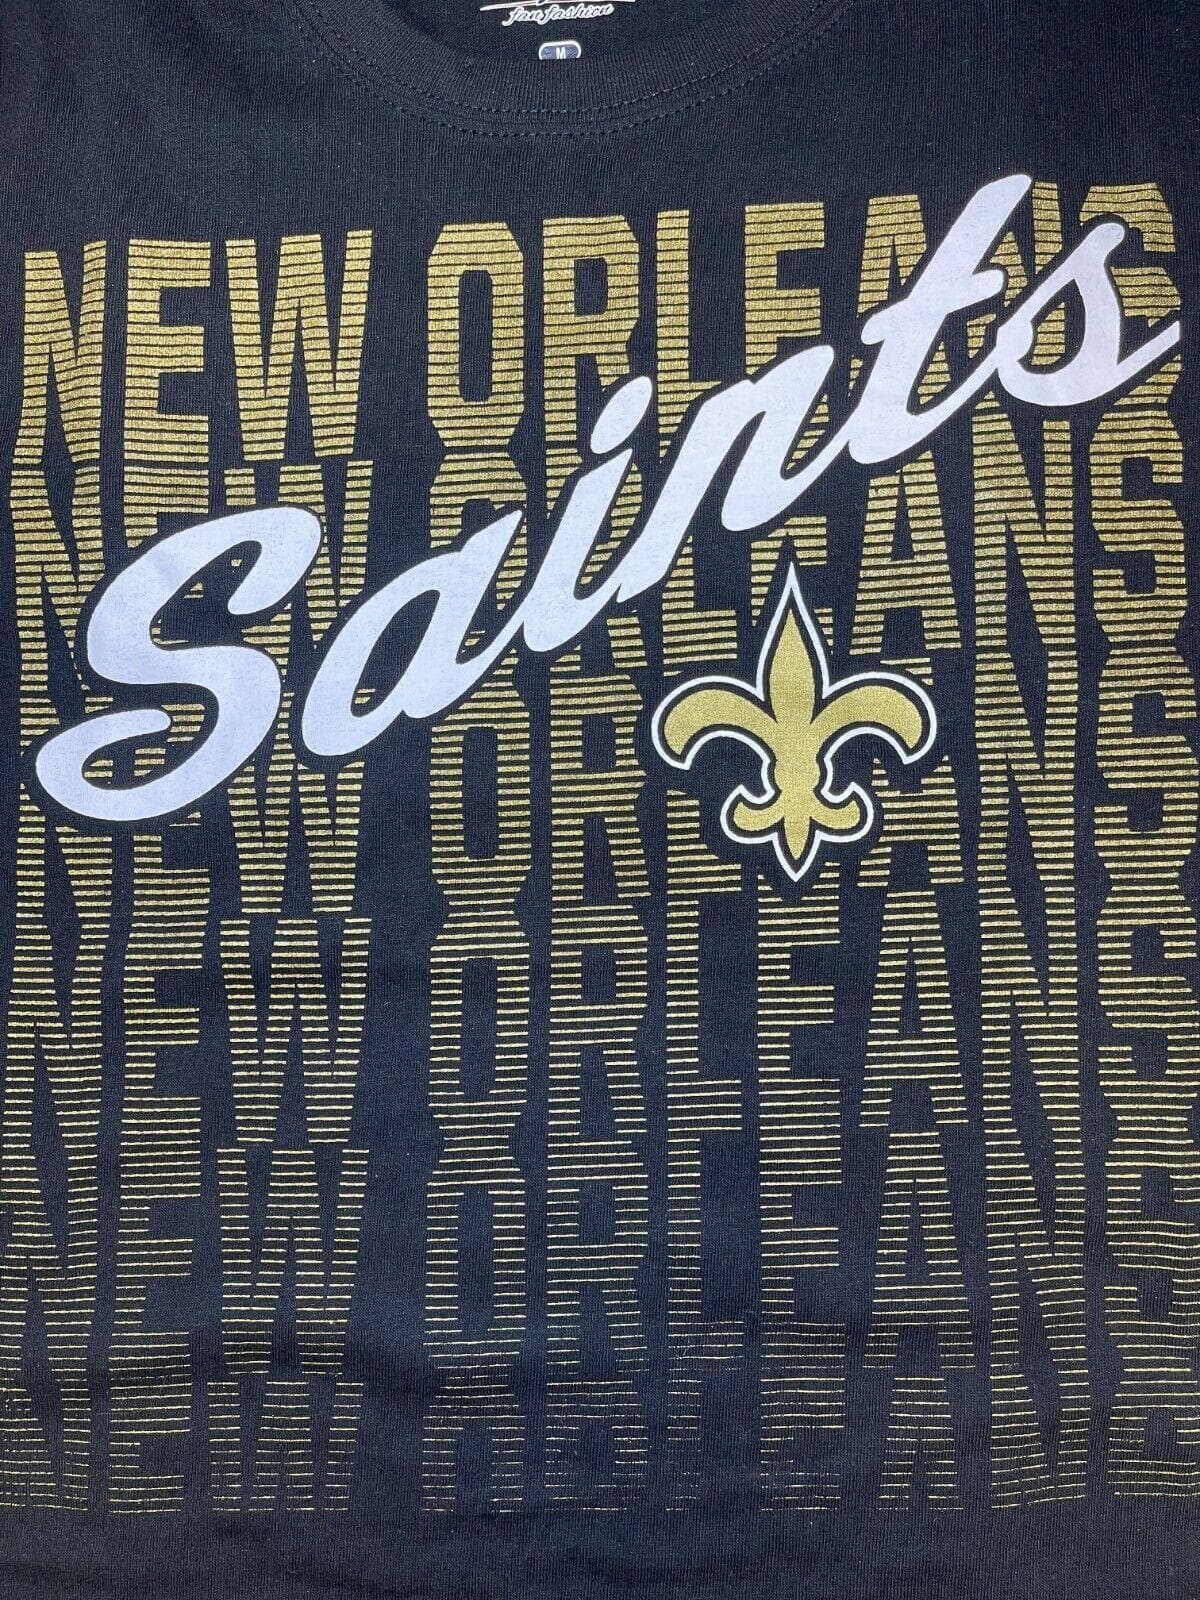 NFL New Orleans Saints Majestic Women's Plus Size T-Shirt 1X NWT